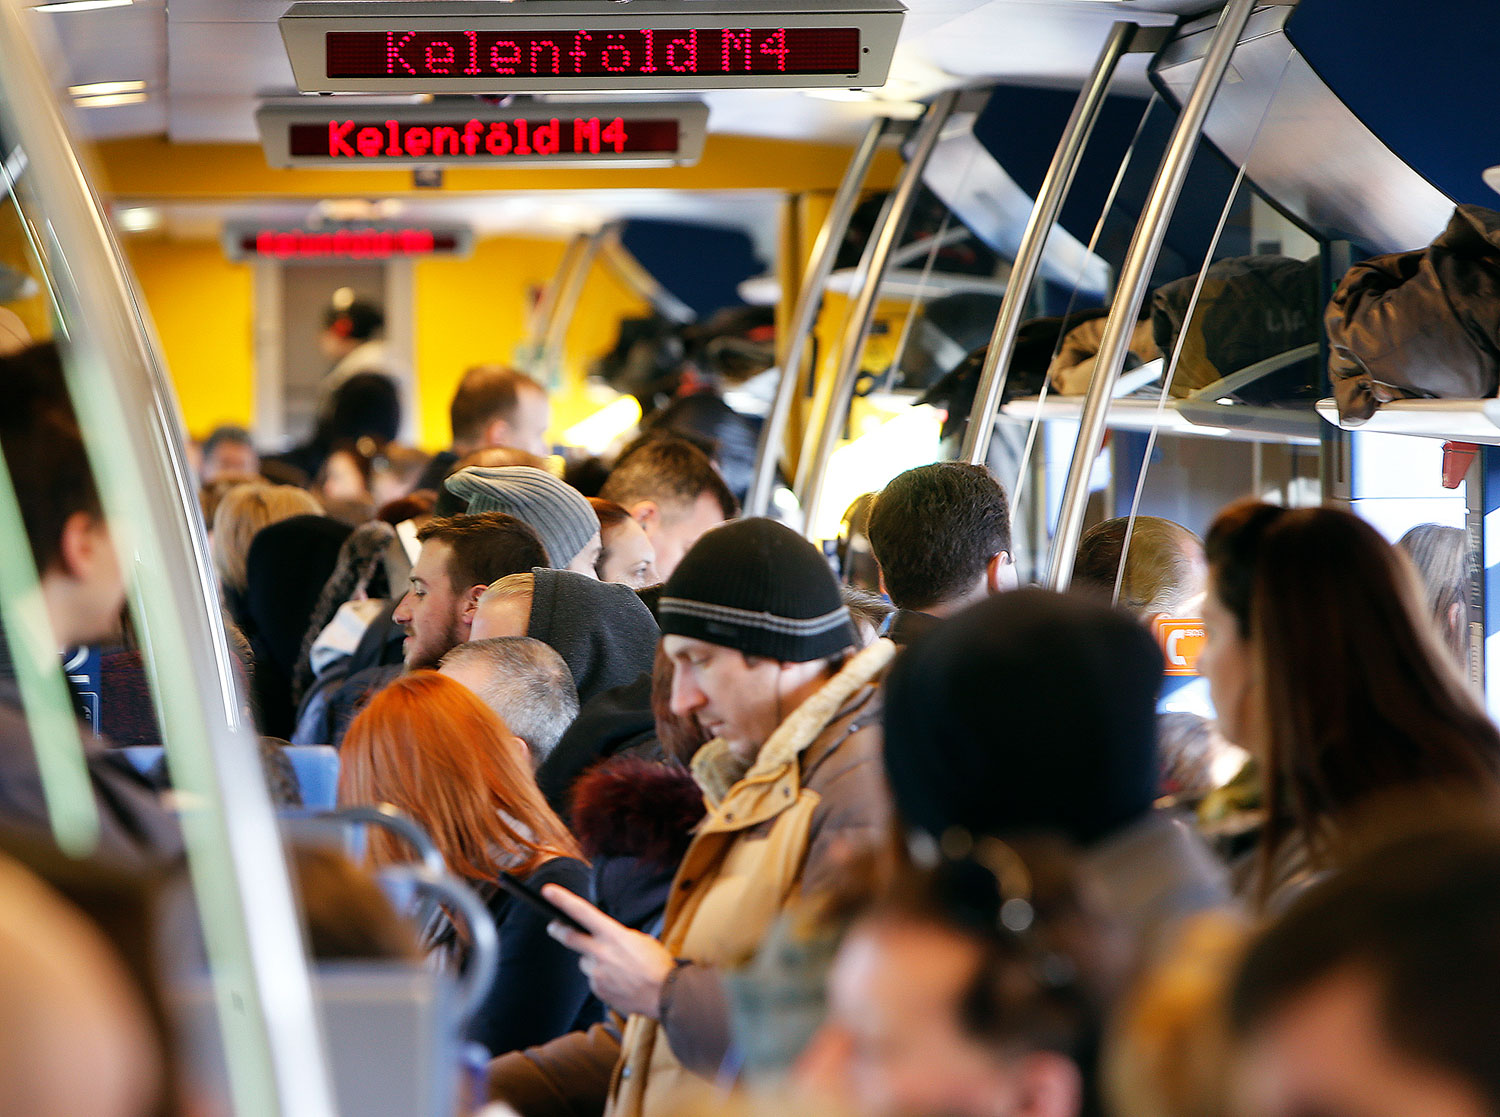 Az utasok egy része nem vesz jegyet – úgysem tudja magát átvágni a tömegen a kalauz